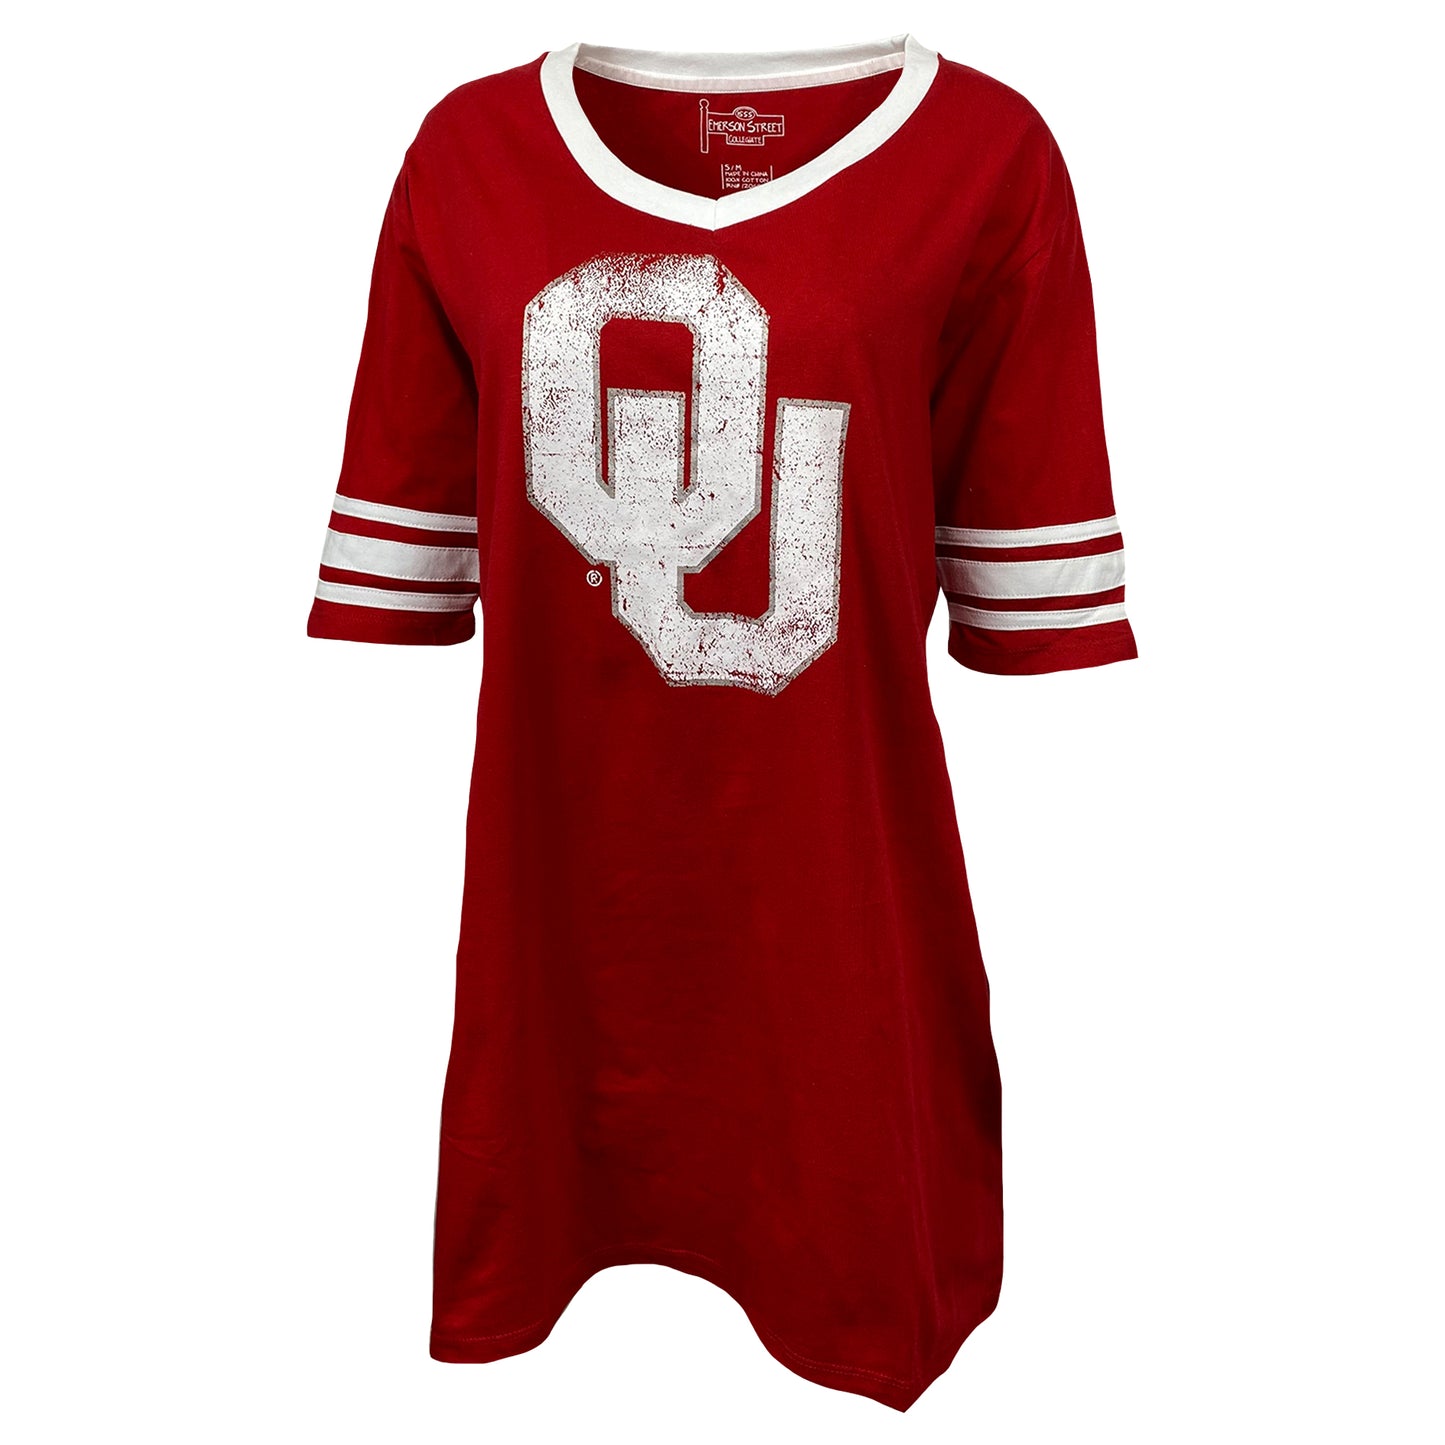 Oklahoma Sooners Football Jersey Nightshirt